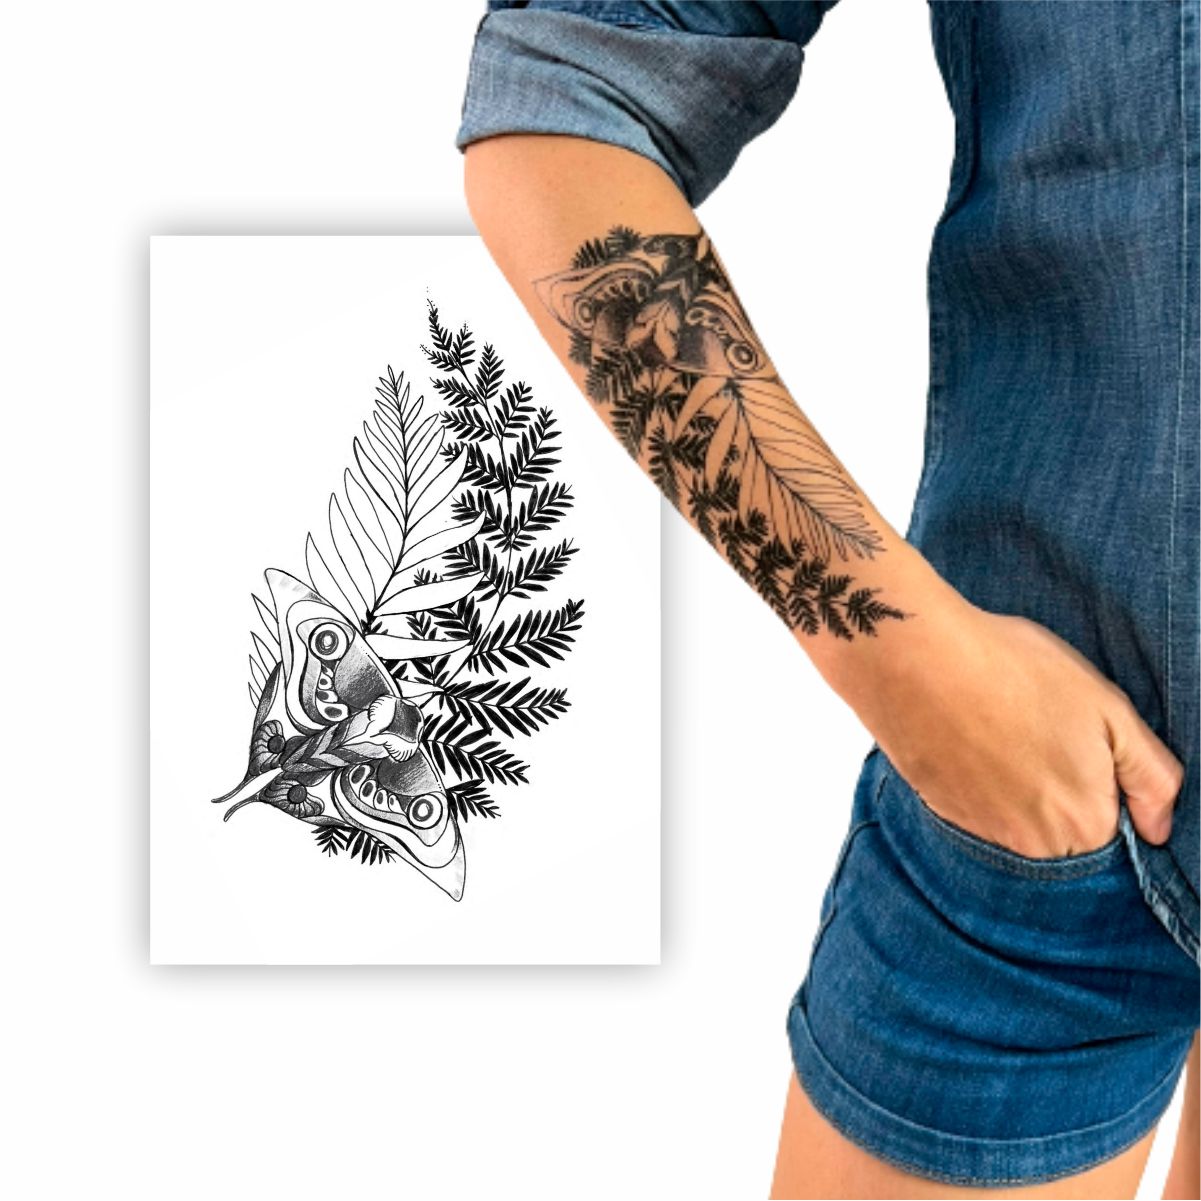 ellie tattoo  Tatuagens gamer, Tatuagem de planta, Tatuagens aleatórias